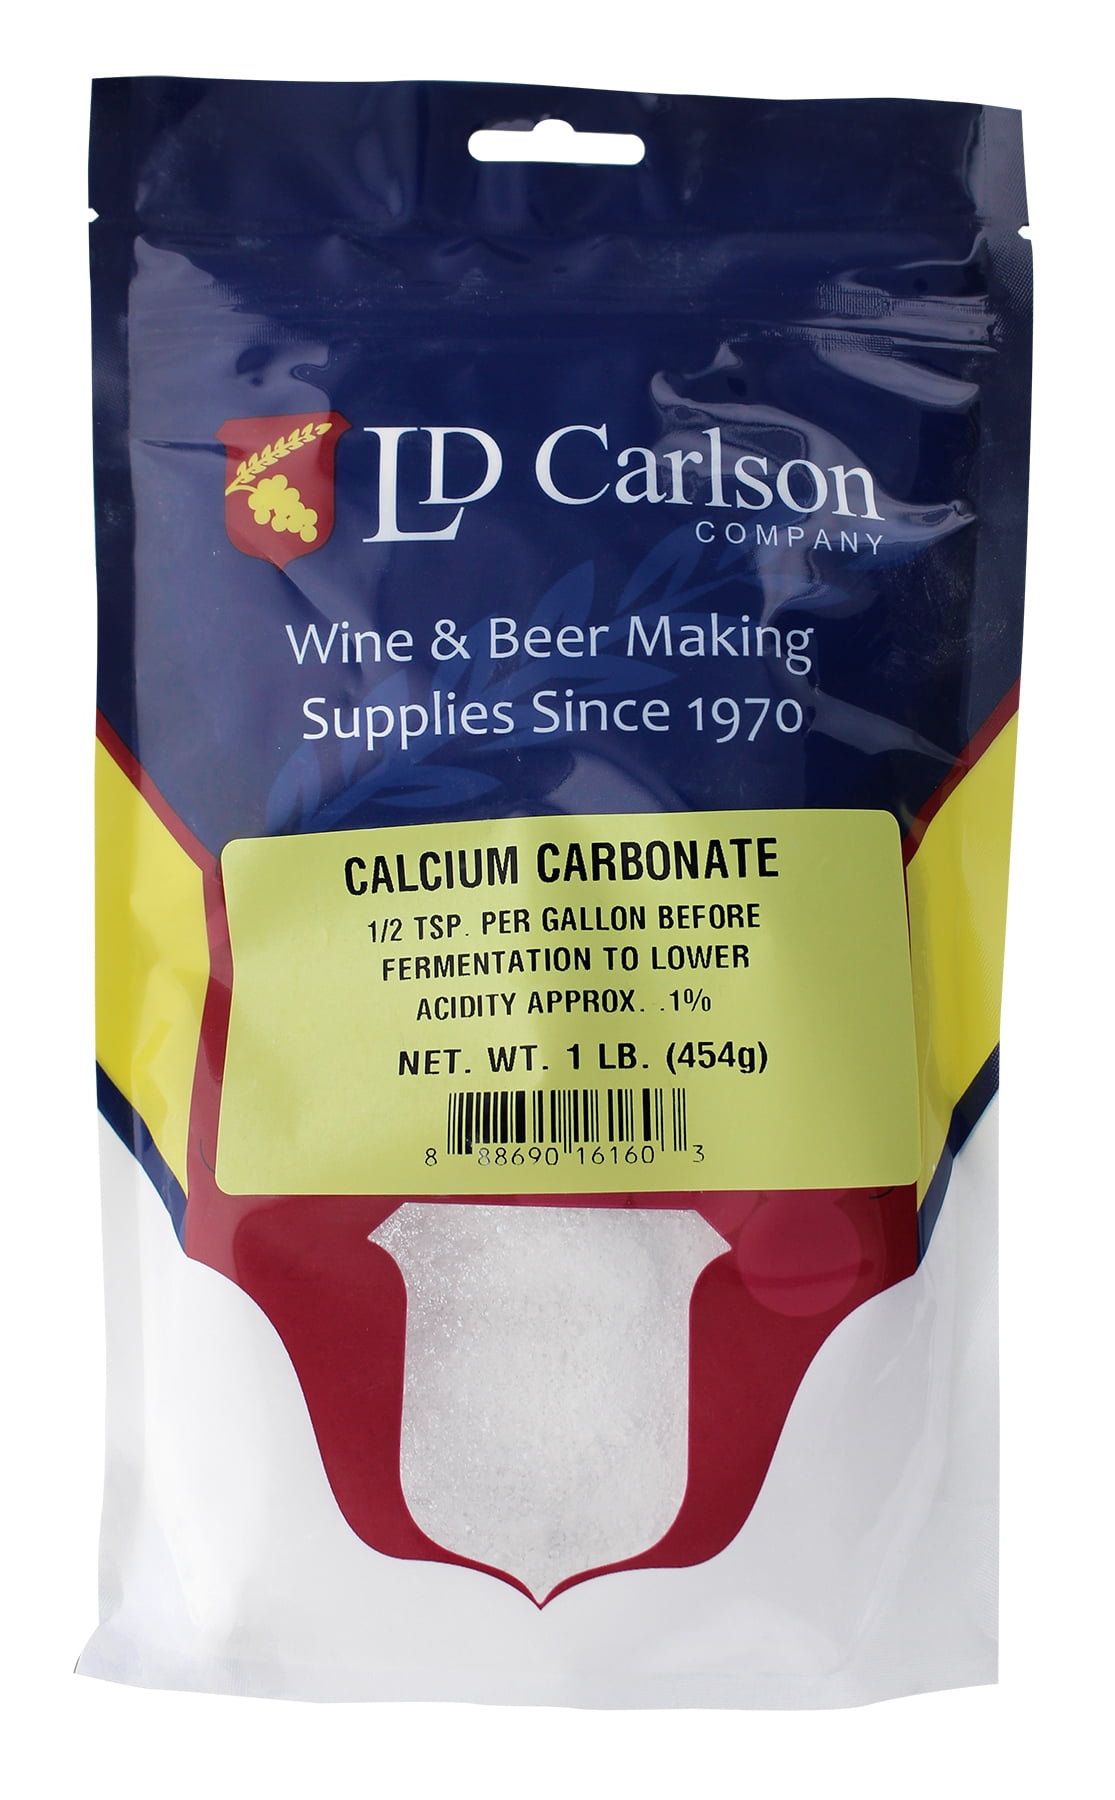 Source The Right Wholesale calcium carbonate price per kg Online 